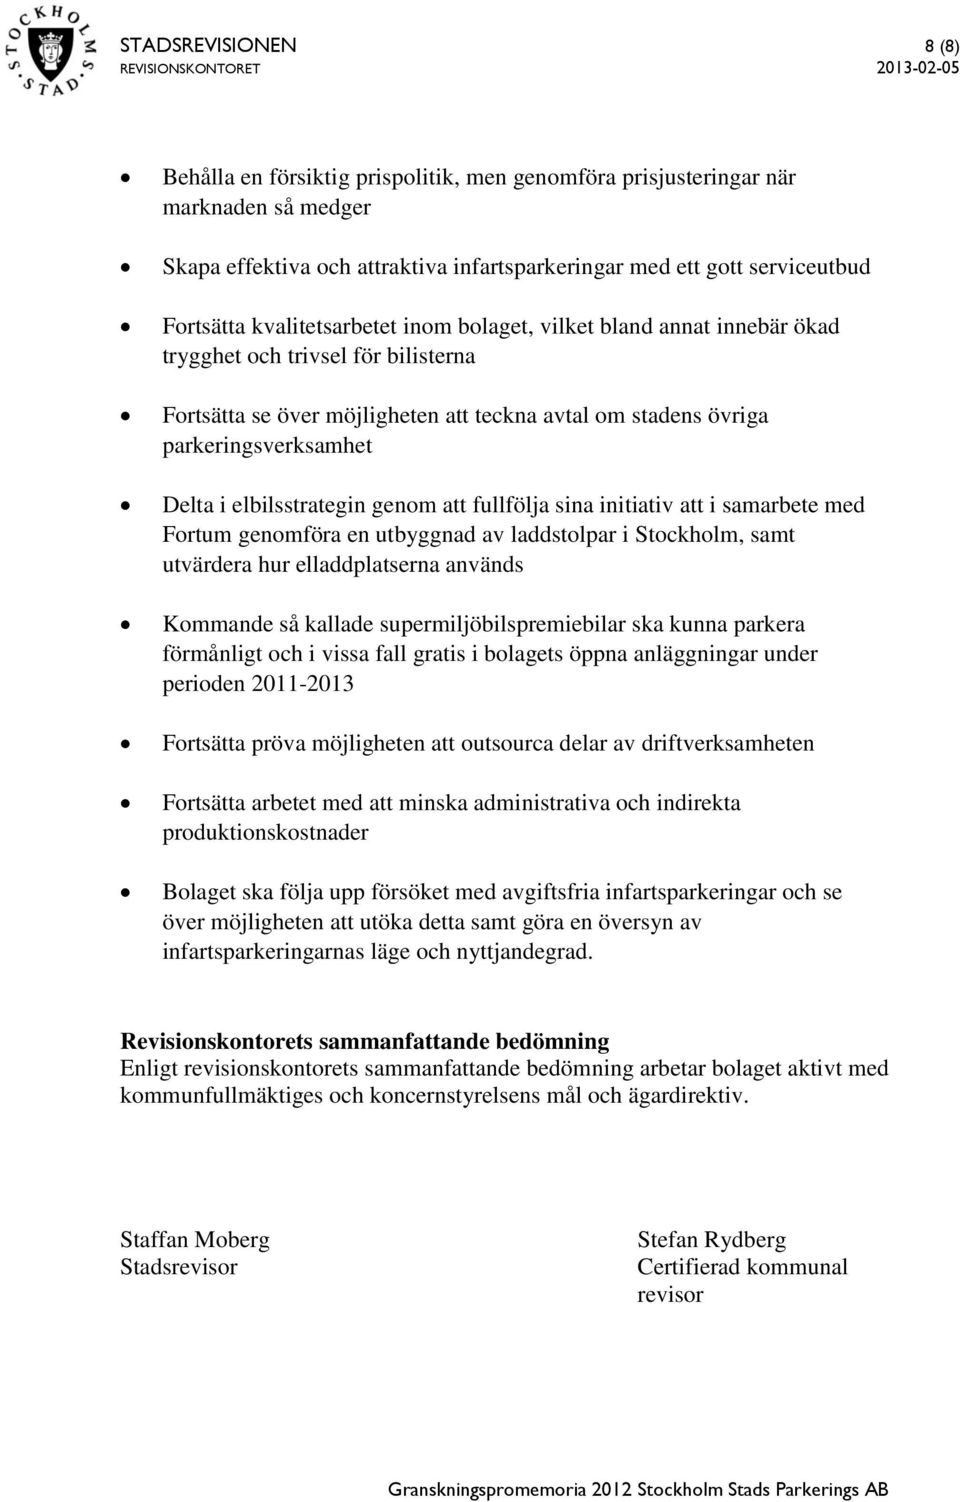 elbilsstrategin genom att fullfölja sina initiativ att i samarbete med Fortum genomföra en utbyggnad av laddstolpar i Stockholm, samt utvärdera hur elladdplatserna används Kommande så kallade